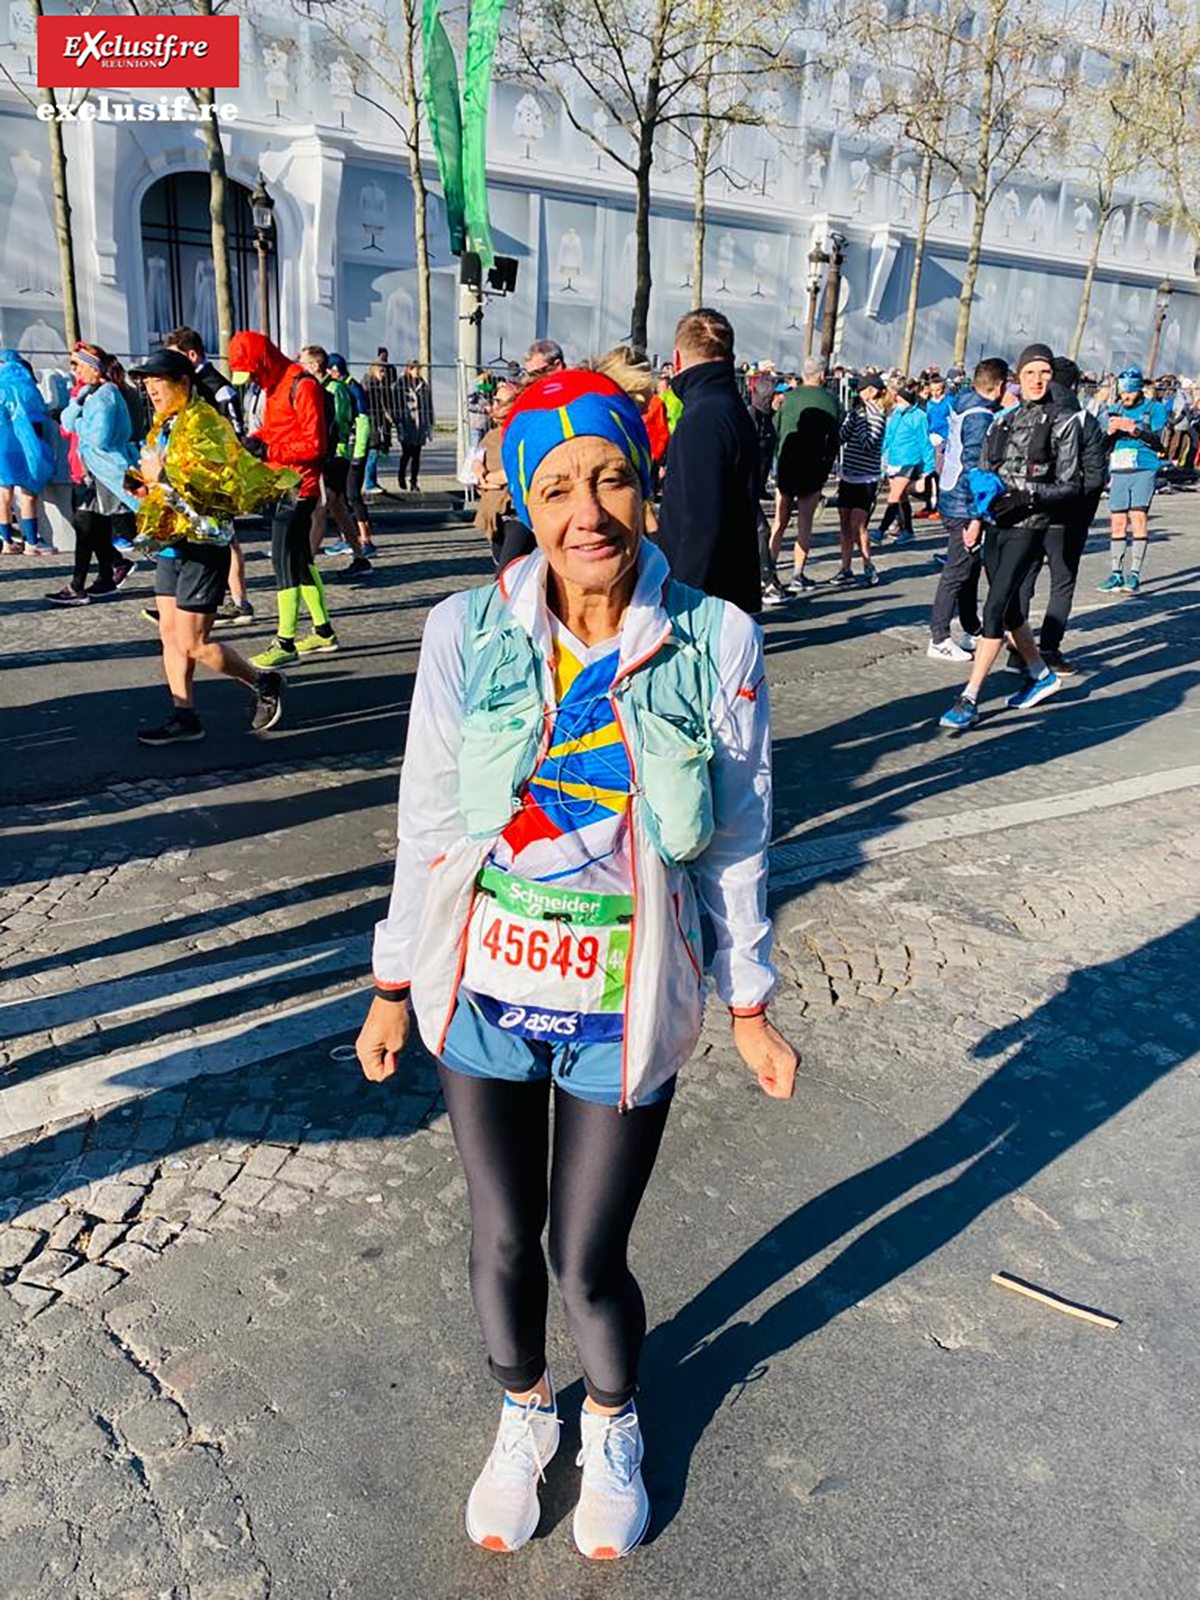 Pour la traileuse tamponnaise Colette Técher, courir un marathon a été une nouvelle expérience